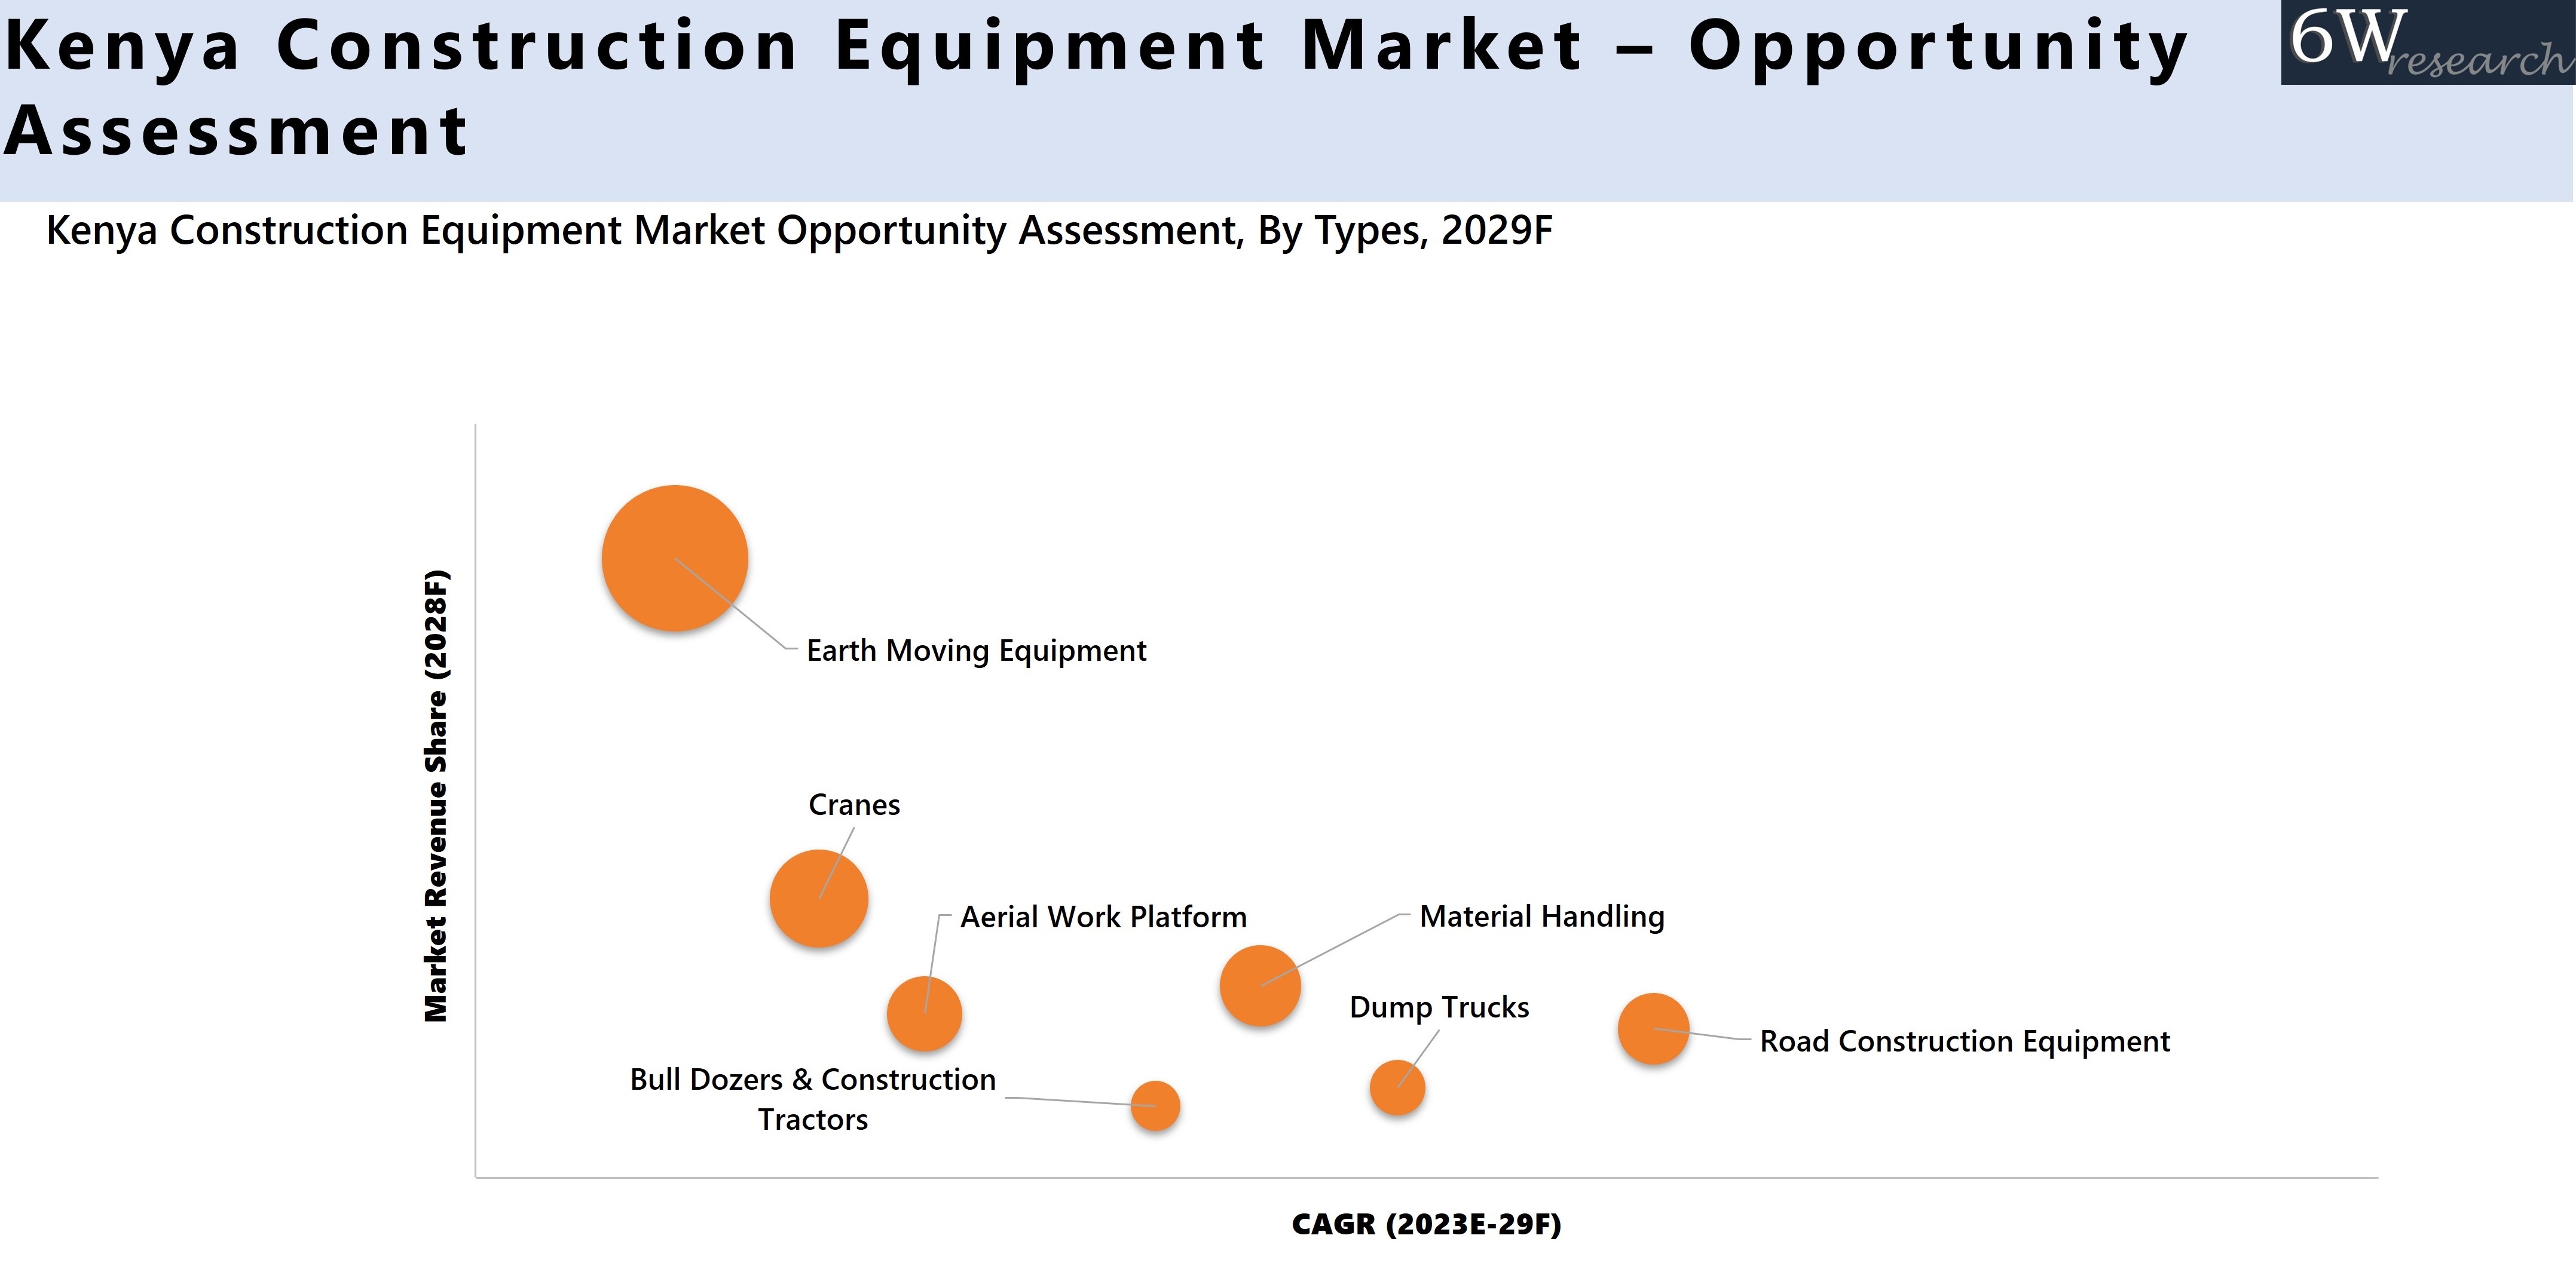 Kenya Construction Equipment Market – Opportunity Assessment